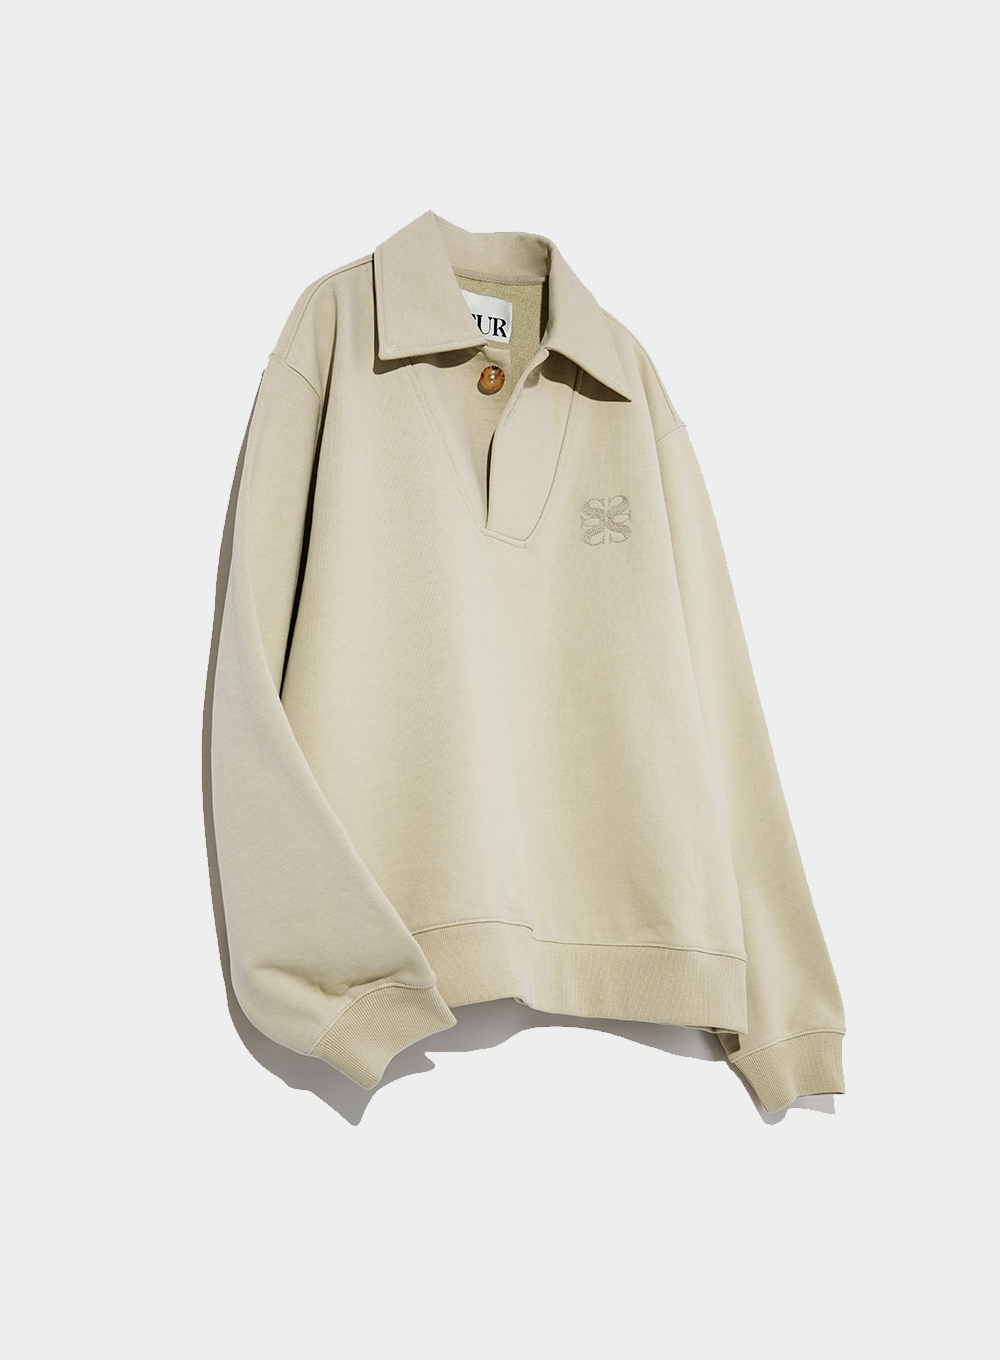 4Season Arles Pullover Sweatshirts Sage Beige